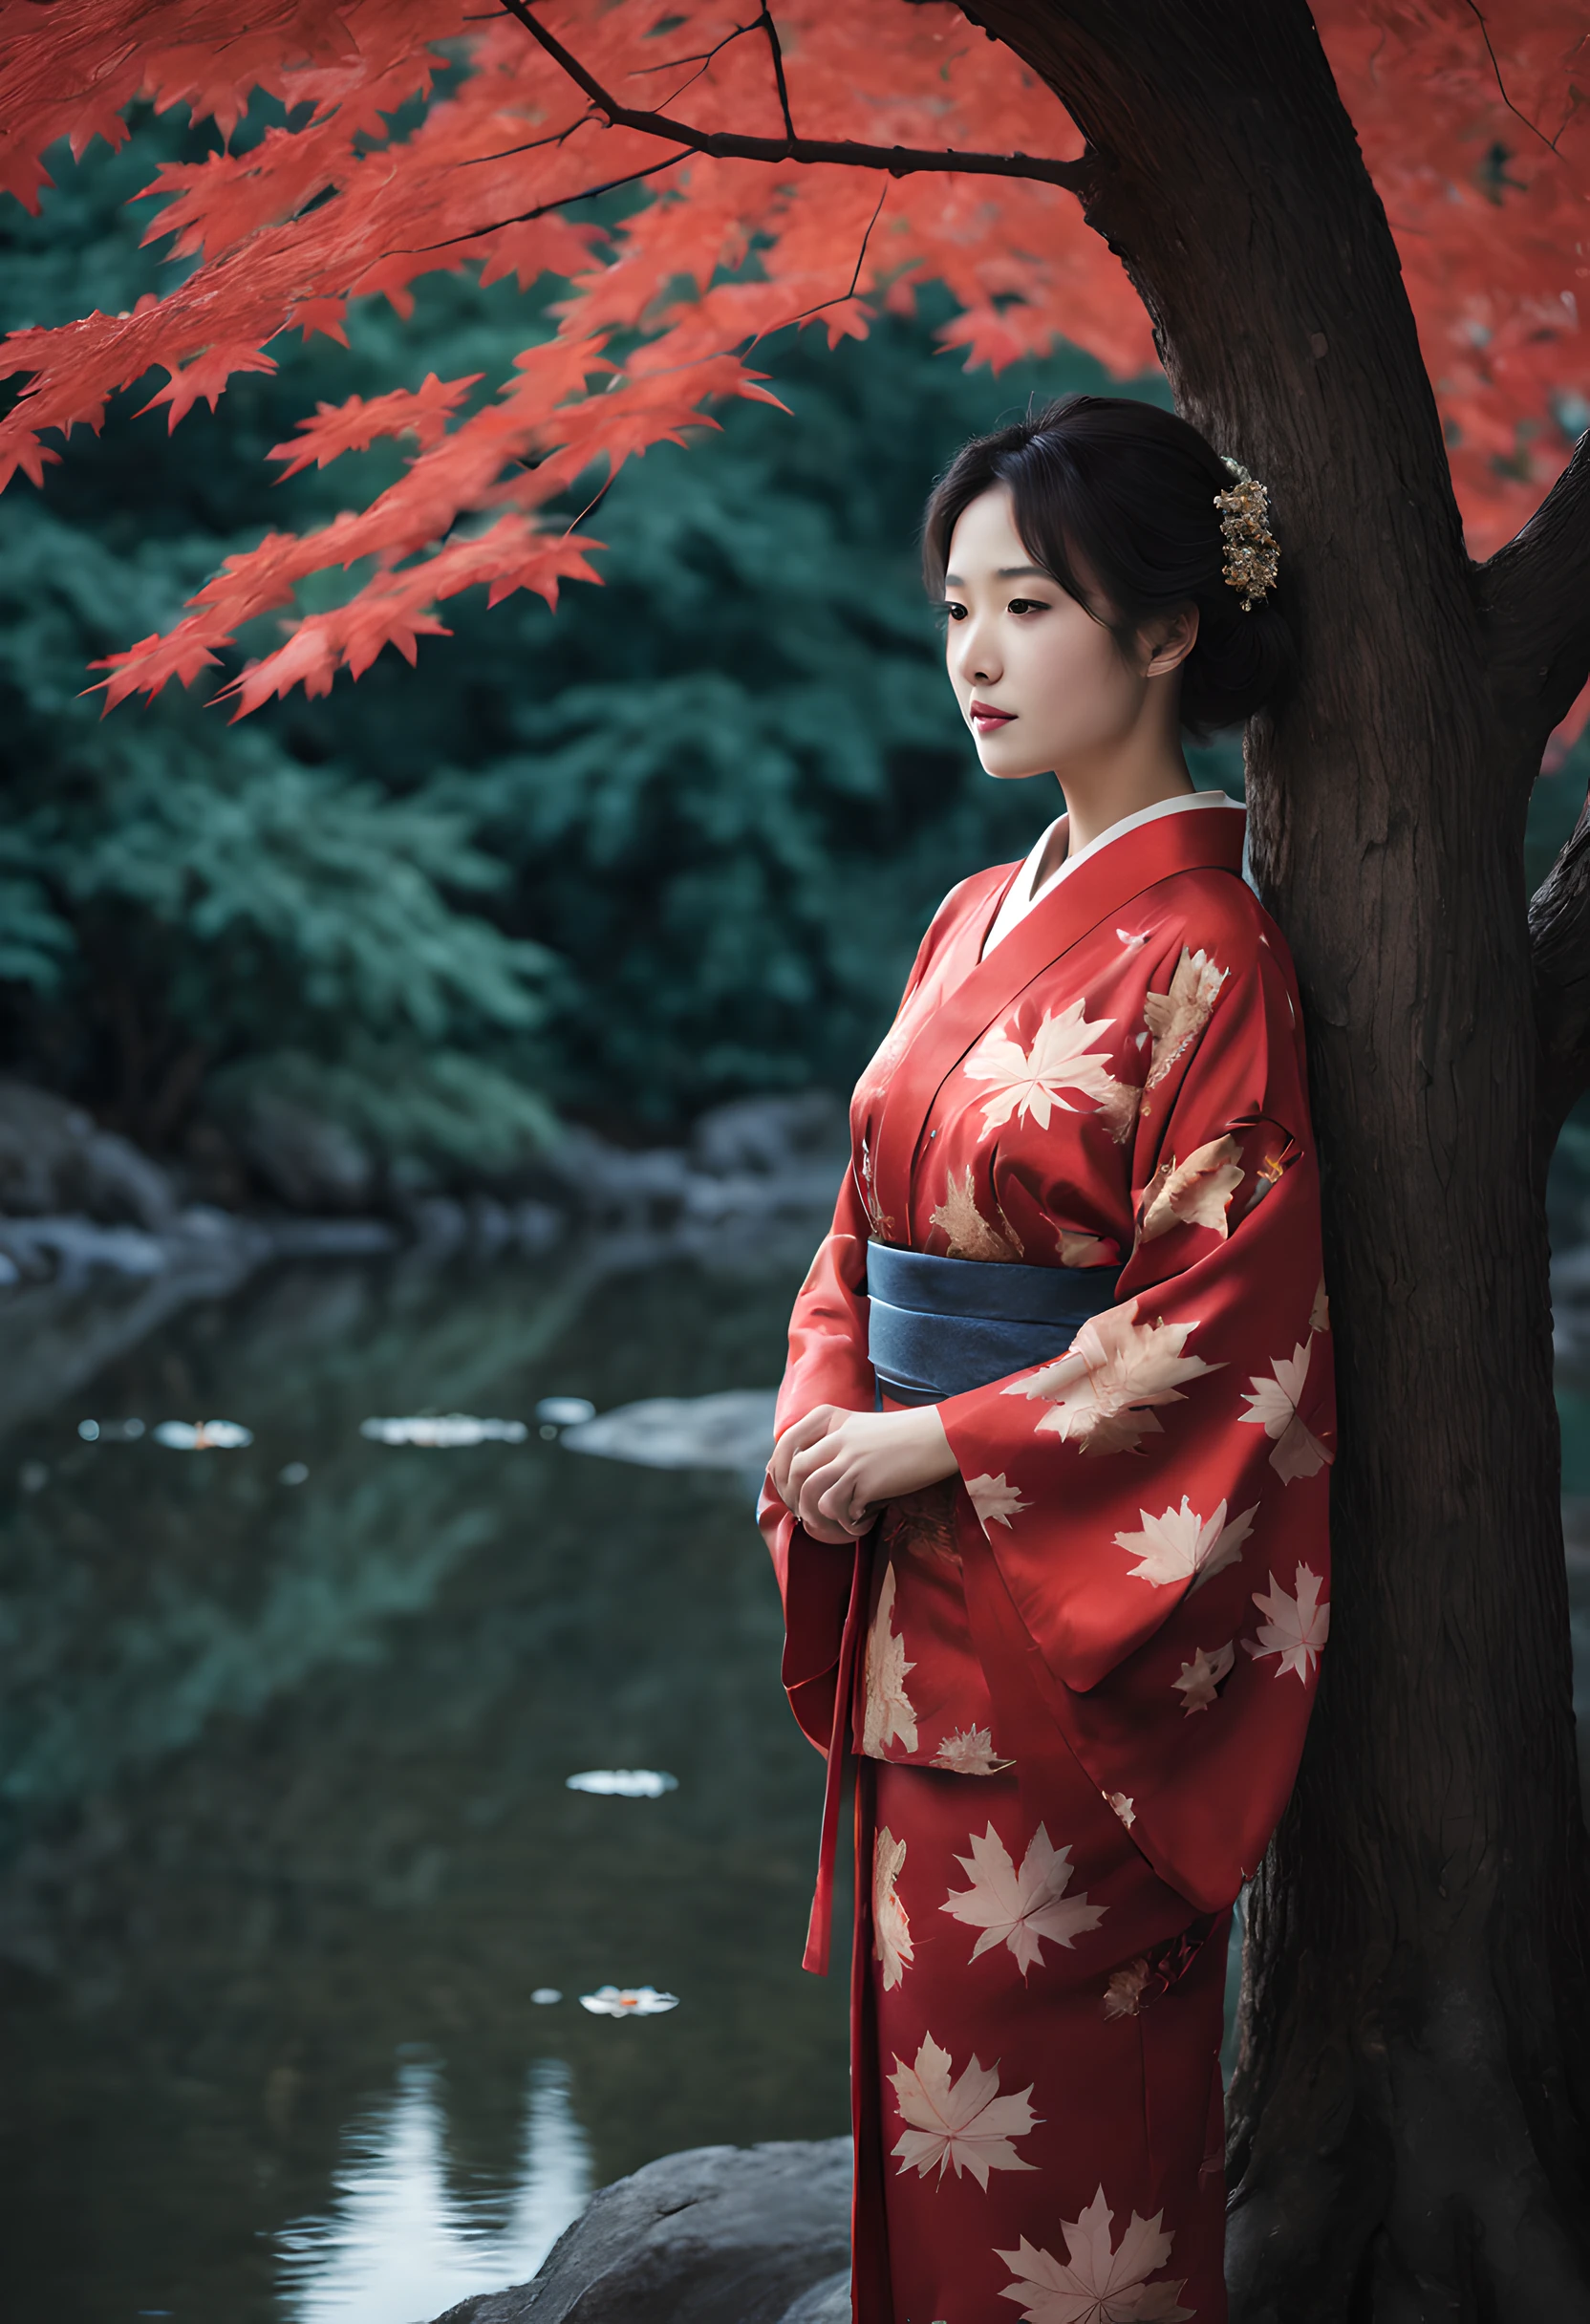 "燃えるような紅葉の色合いに包まれた静かな池を描いた魅惑的な夜のシーンを描きます。. 構図は、カエデの葉と近くに立つ雄大なカエデの木の目立つ部分を強調するべきです。.

前景に, 40代の日本人女性が優雅に立っている, 鮮やかな赤い着物をまとった. 着物が彼女の優雅さを際立たせている, 彼女の美しさは月明かりの下で輝きます. 彼女は時代を超えた魅力の持ち主です, 季節の真髄を捉える.

女性はきらめく池を眺める, 紅葉の反射が水面に映る. 彼女の表情は穏やかな思索の表情である, 夜の静かな美しさに浸りながら.

背景には壮大なカエデの木が描かれている, 枝には月光を捉えたような輝く葉が飾られている. 池は幻想的な光景を映し出す, その瞬間の魅力をさらに高める.

全体的な構成は、自然の美しさに対する静けさと畏敬の念を醸し出すものでなければならない。. この魅惑的な秋の風景画では、女性の魅惑的な美しさと紅葉の輝きが主役となるようにしてください。."